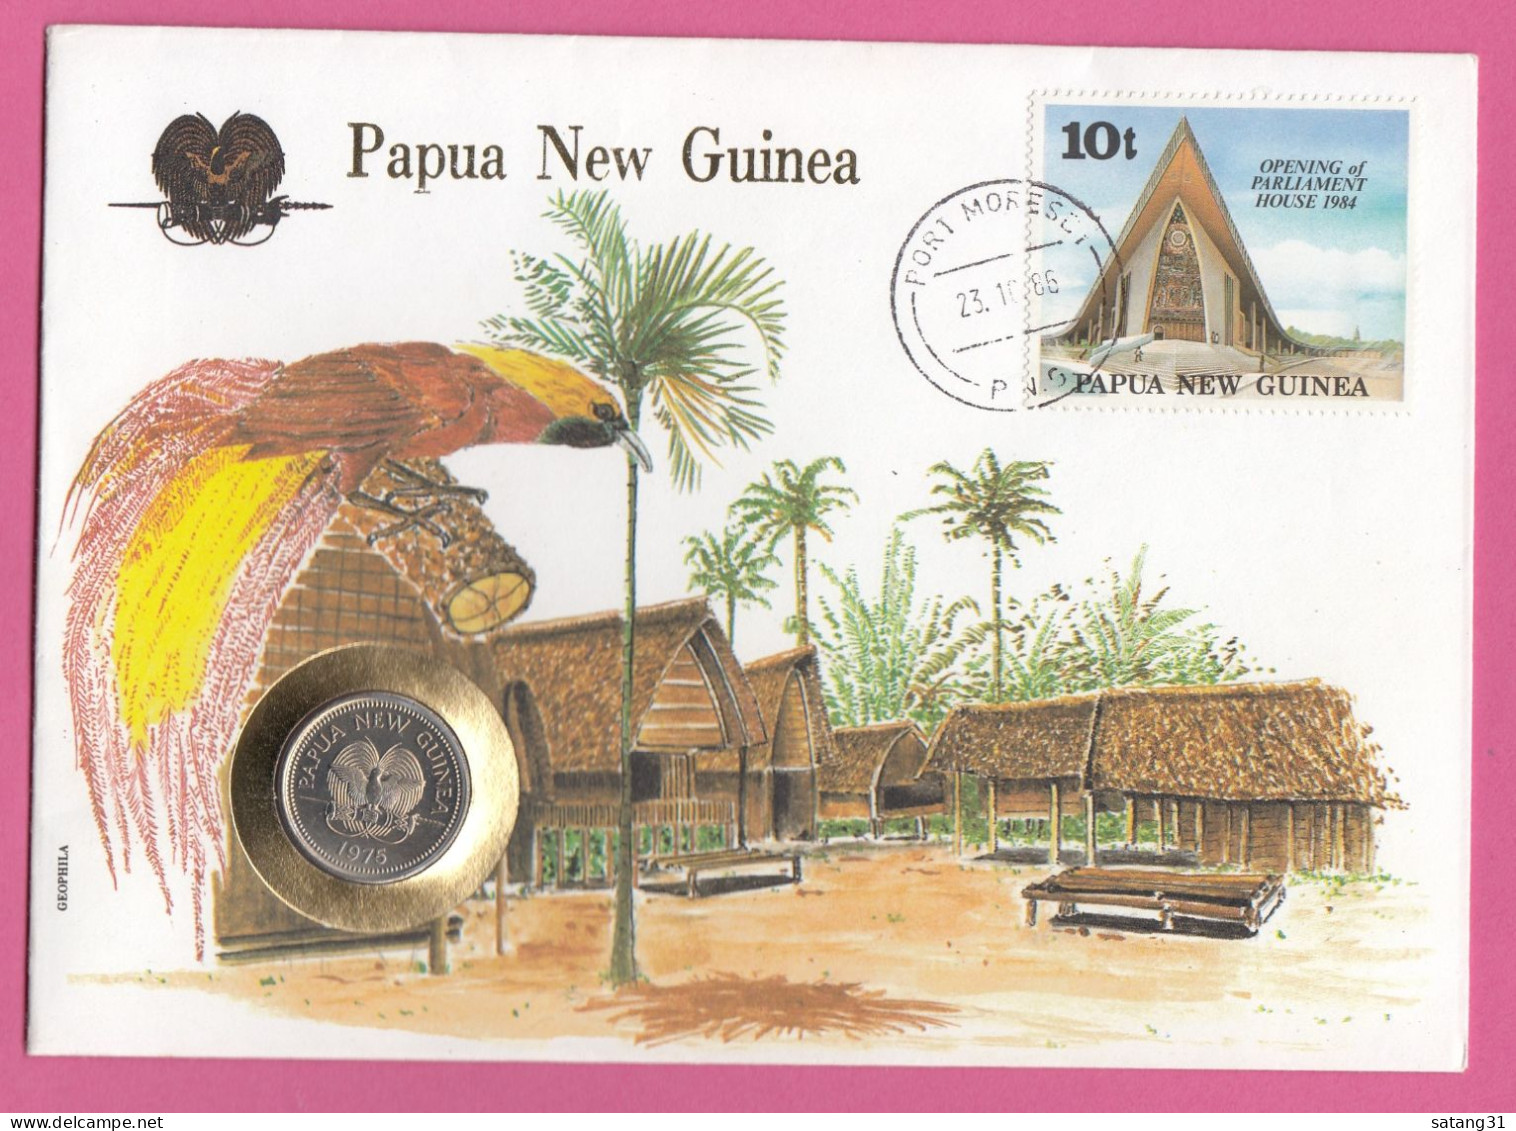 PAPOUASIE NOUVELLE GUINEE.ENVELOPPE AVEC TIMBRE ET MONNAIE,1986. - Münzen